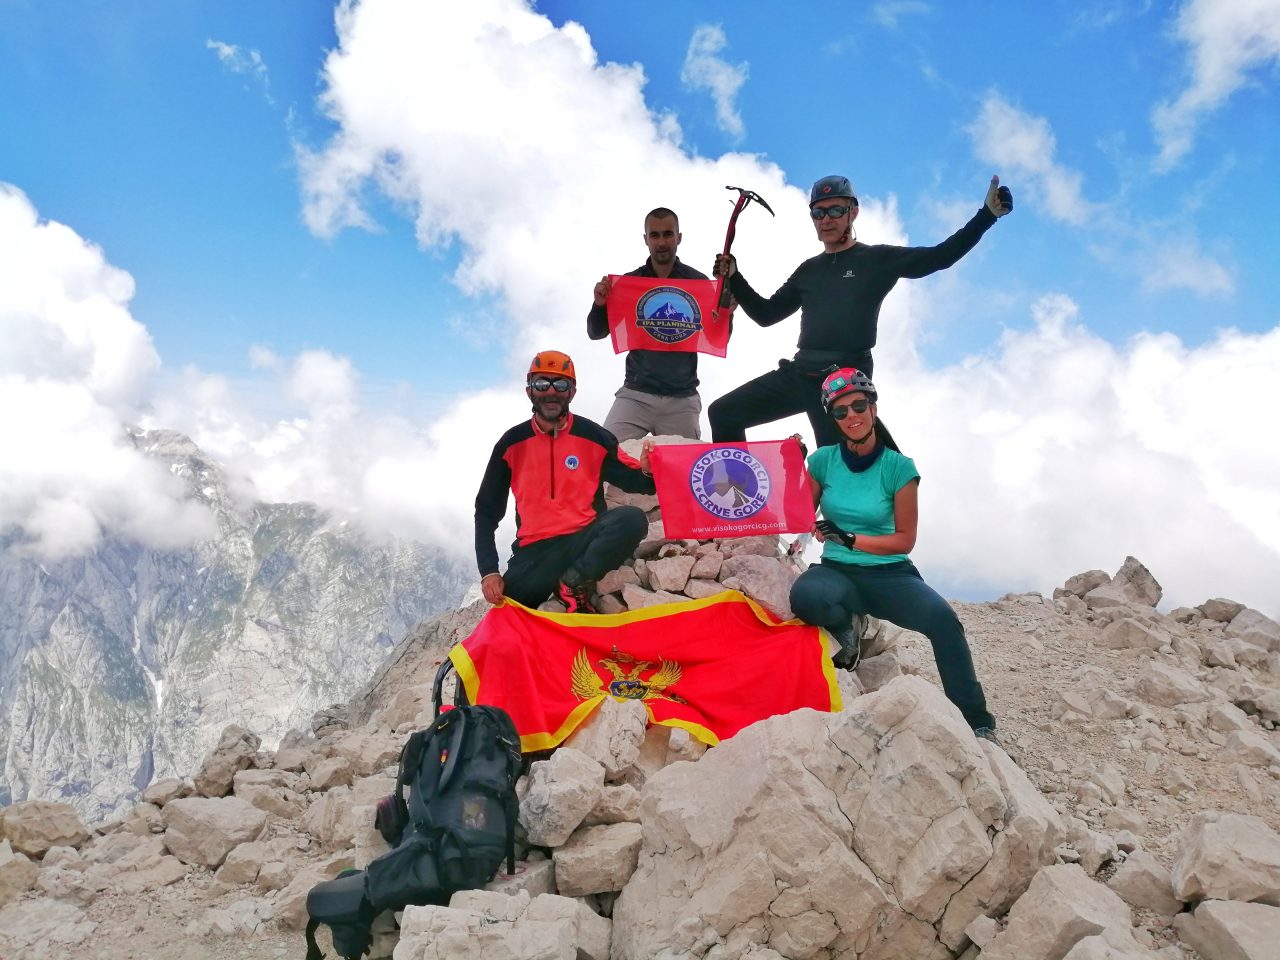 Crnogorski planinari osvojili Dolomite i Julijske Alpe